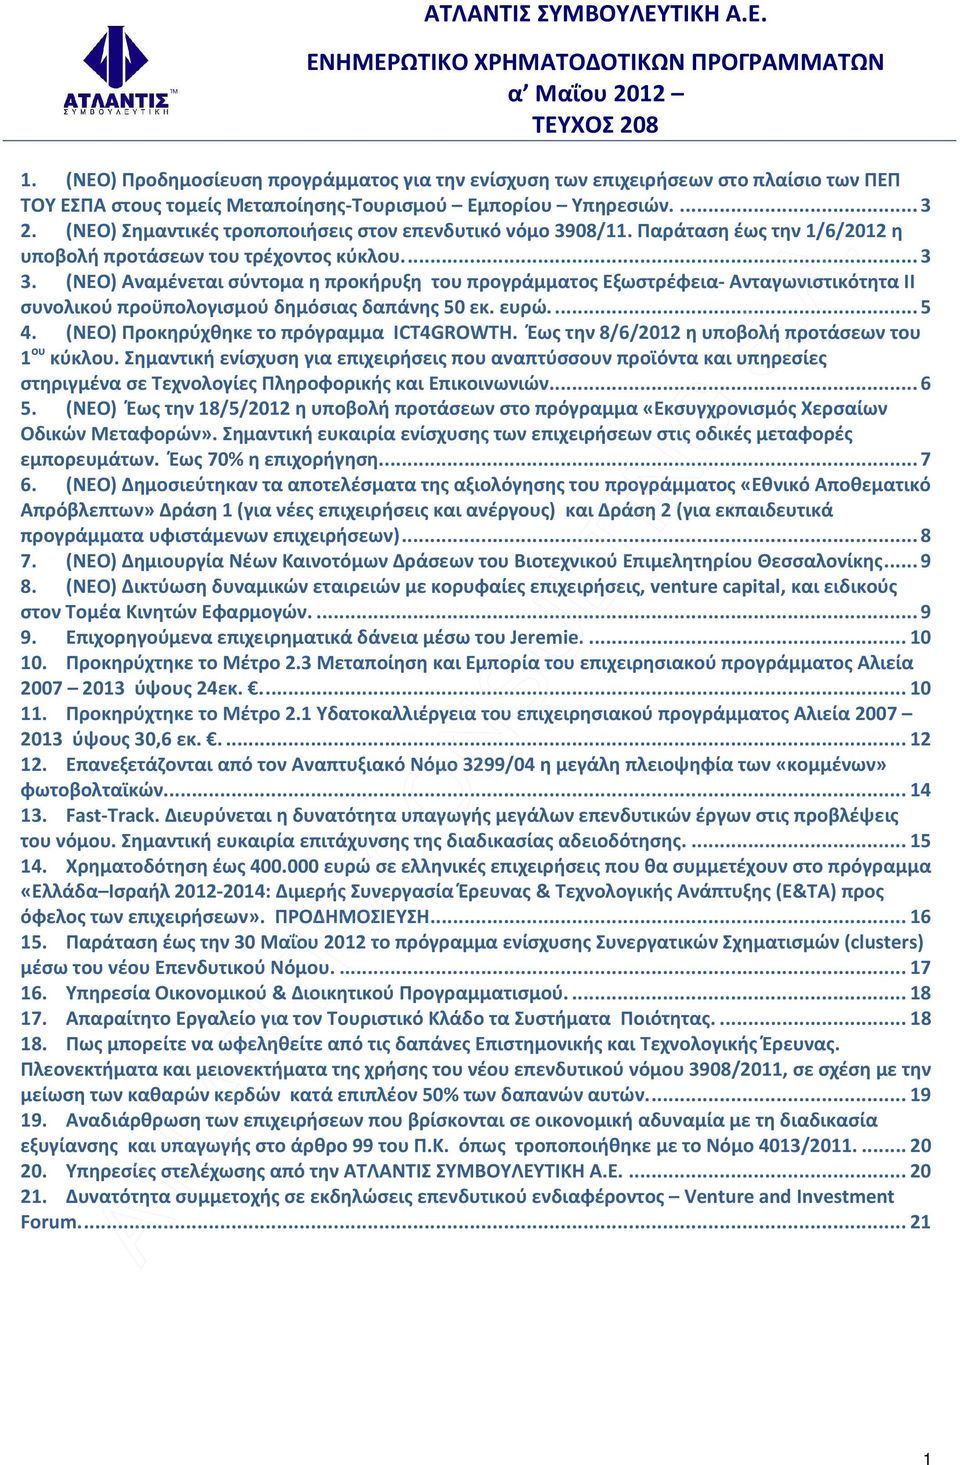 (ΝΕΟ) Σημαντικές τροποποιήσεις στον επενδυτικό νόμο 3908/11. Παράταση έως την 1/6/2012 η υποβολή προτάσεων του τρέχοντος κύκλου...3 3.